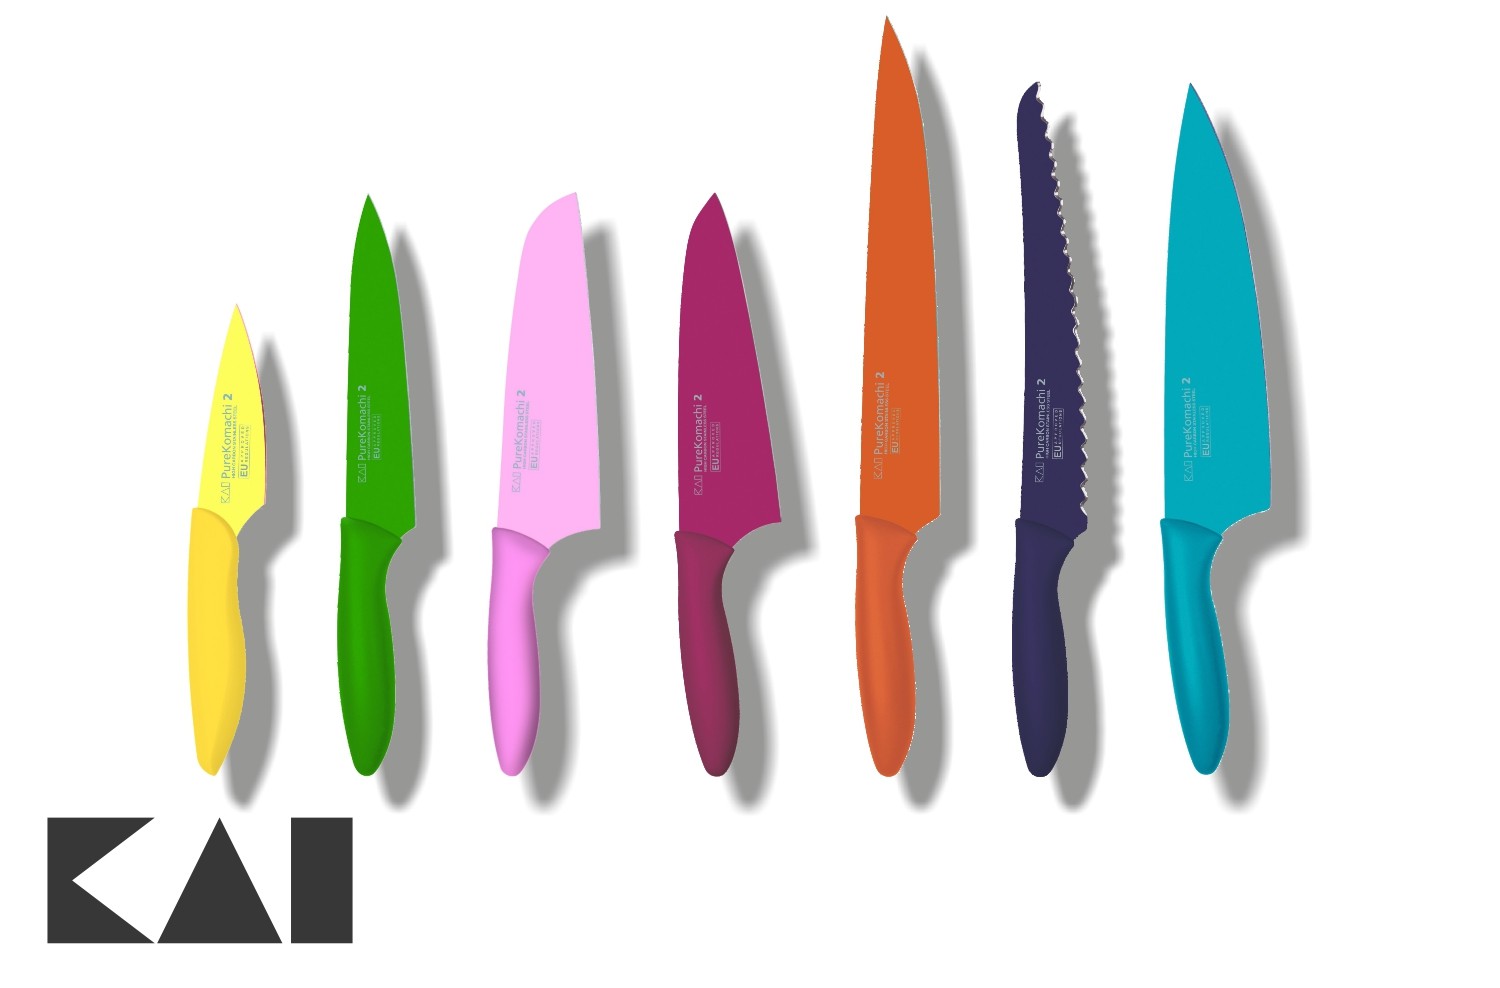 Cuchillos y tablas de colores: para qué sirve cada uno